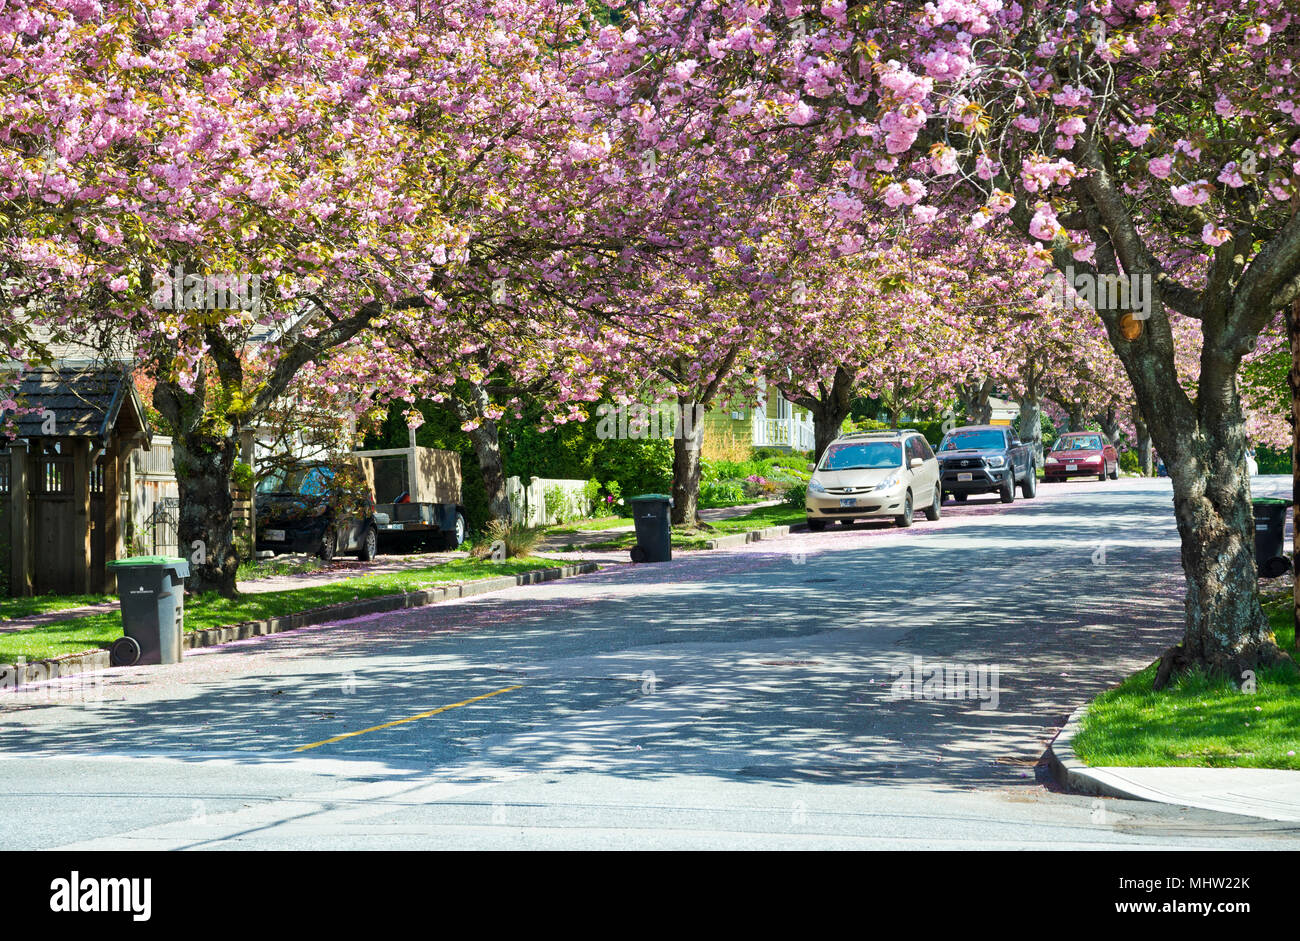 Rue bordée d'ornement rose avec fleurs de cerisier à New Westminster, BC, Canada. Prunus serrulata Kanzan cerisiers.(Metro Vancouver} Banque D'Images